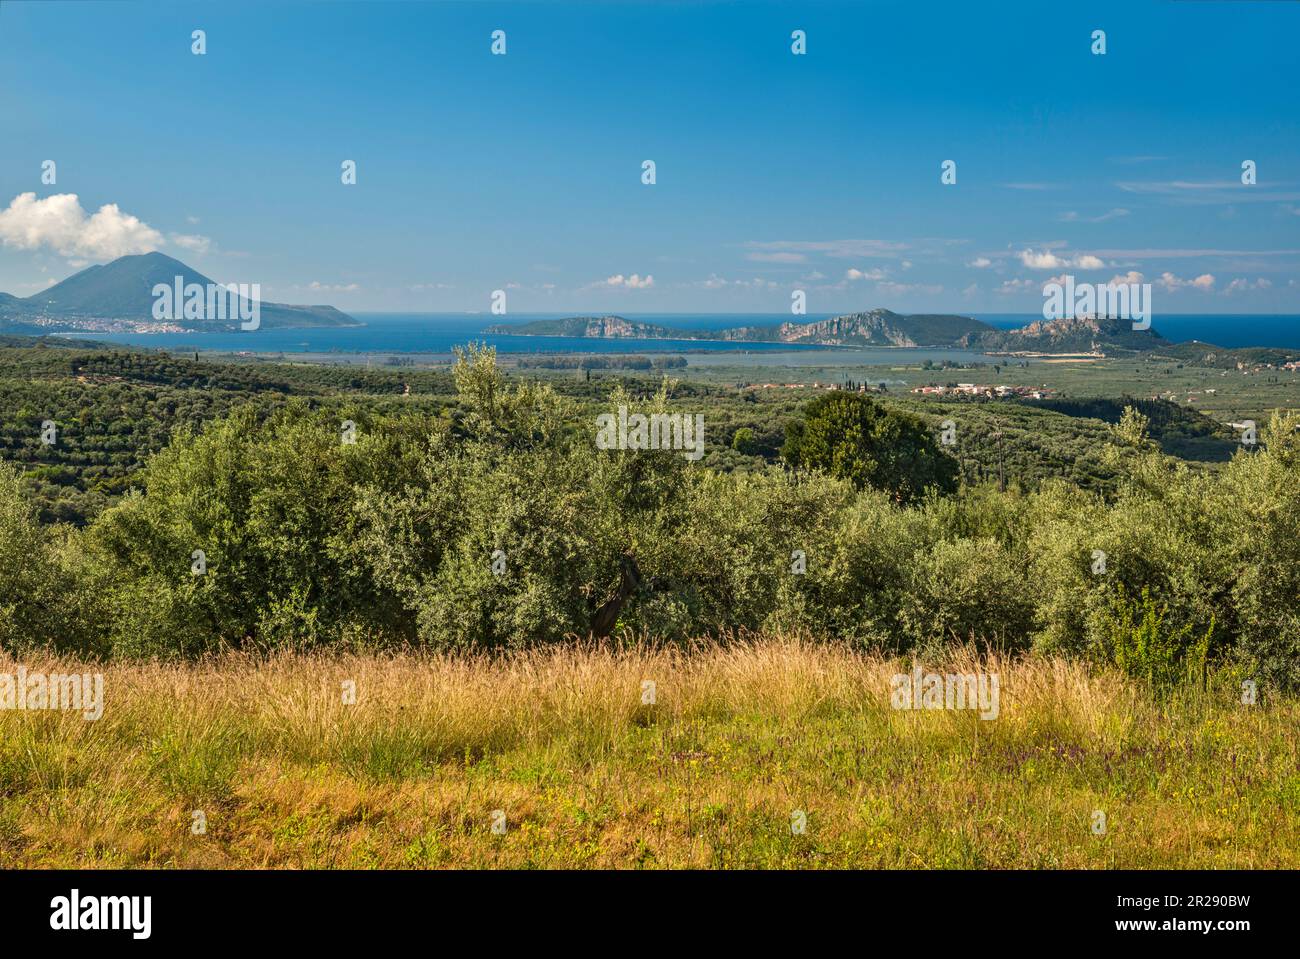 Blick auf die Küste des Ionischen Meeres vom Palast Nestor, in der Nähe der Stadt Pylos und des Dorfes Chora (Hora), der Halbinsel Peloponnes, der Region Peloponnes, Griechenland Stockfoto